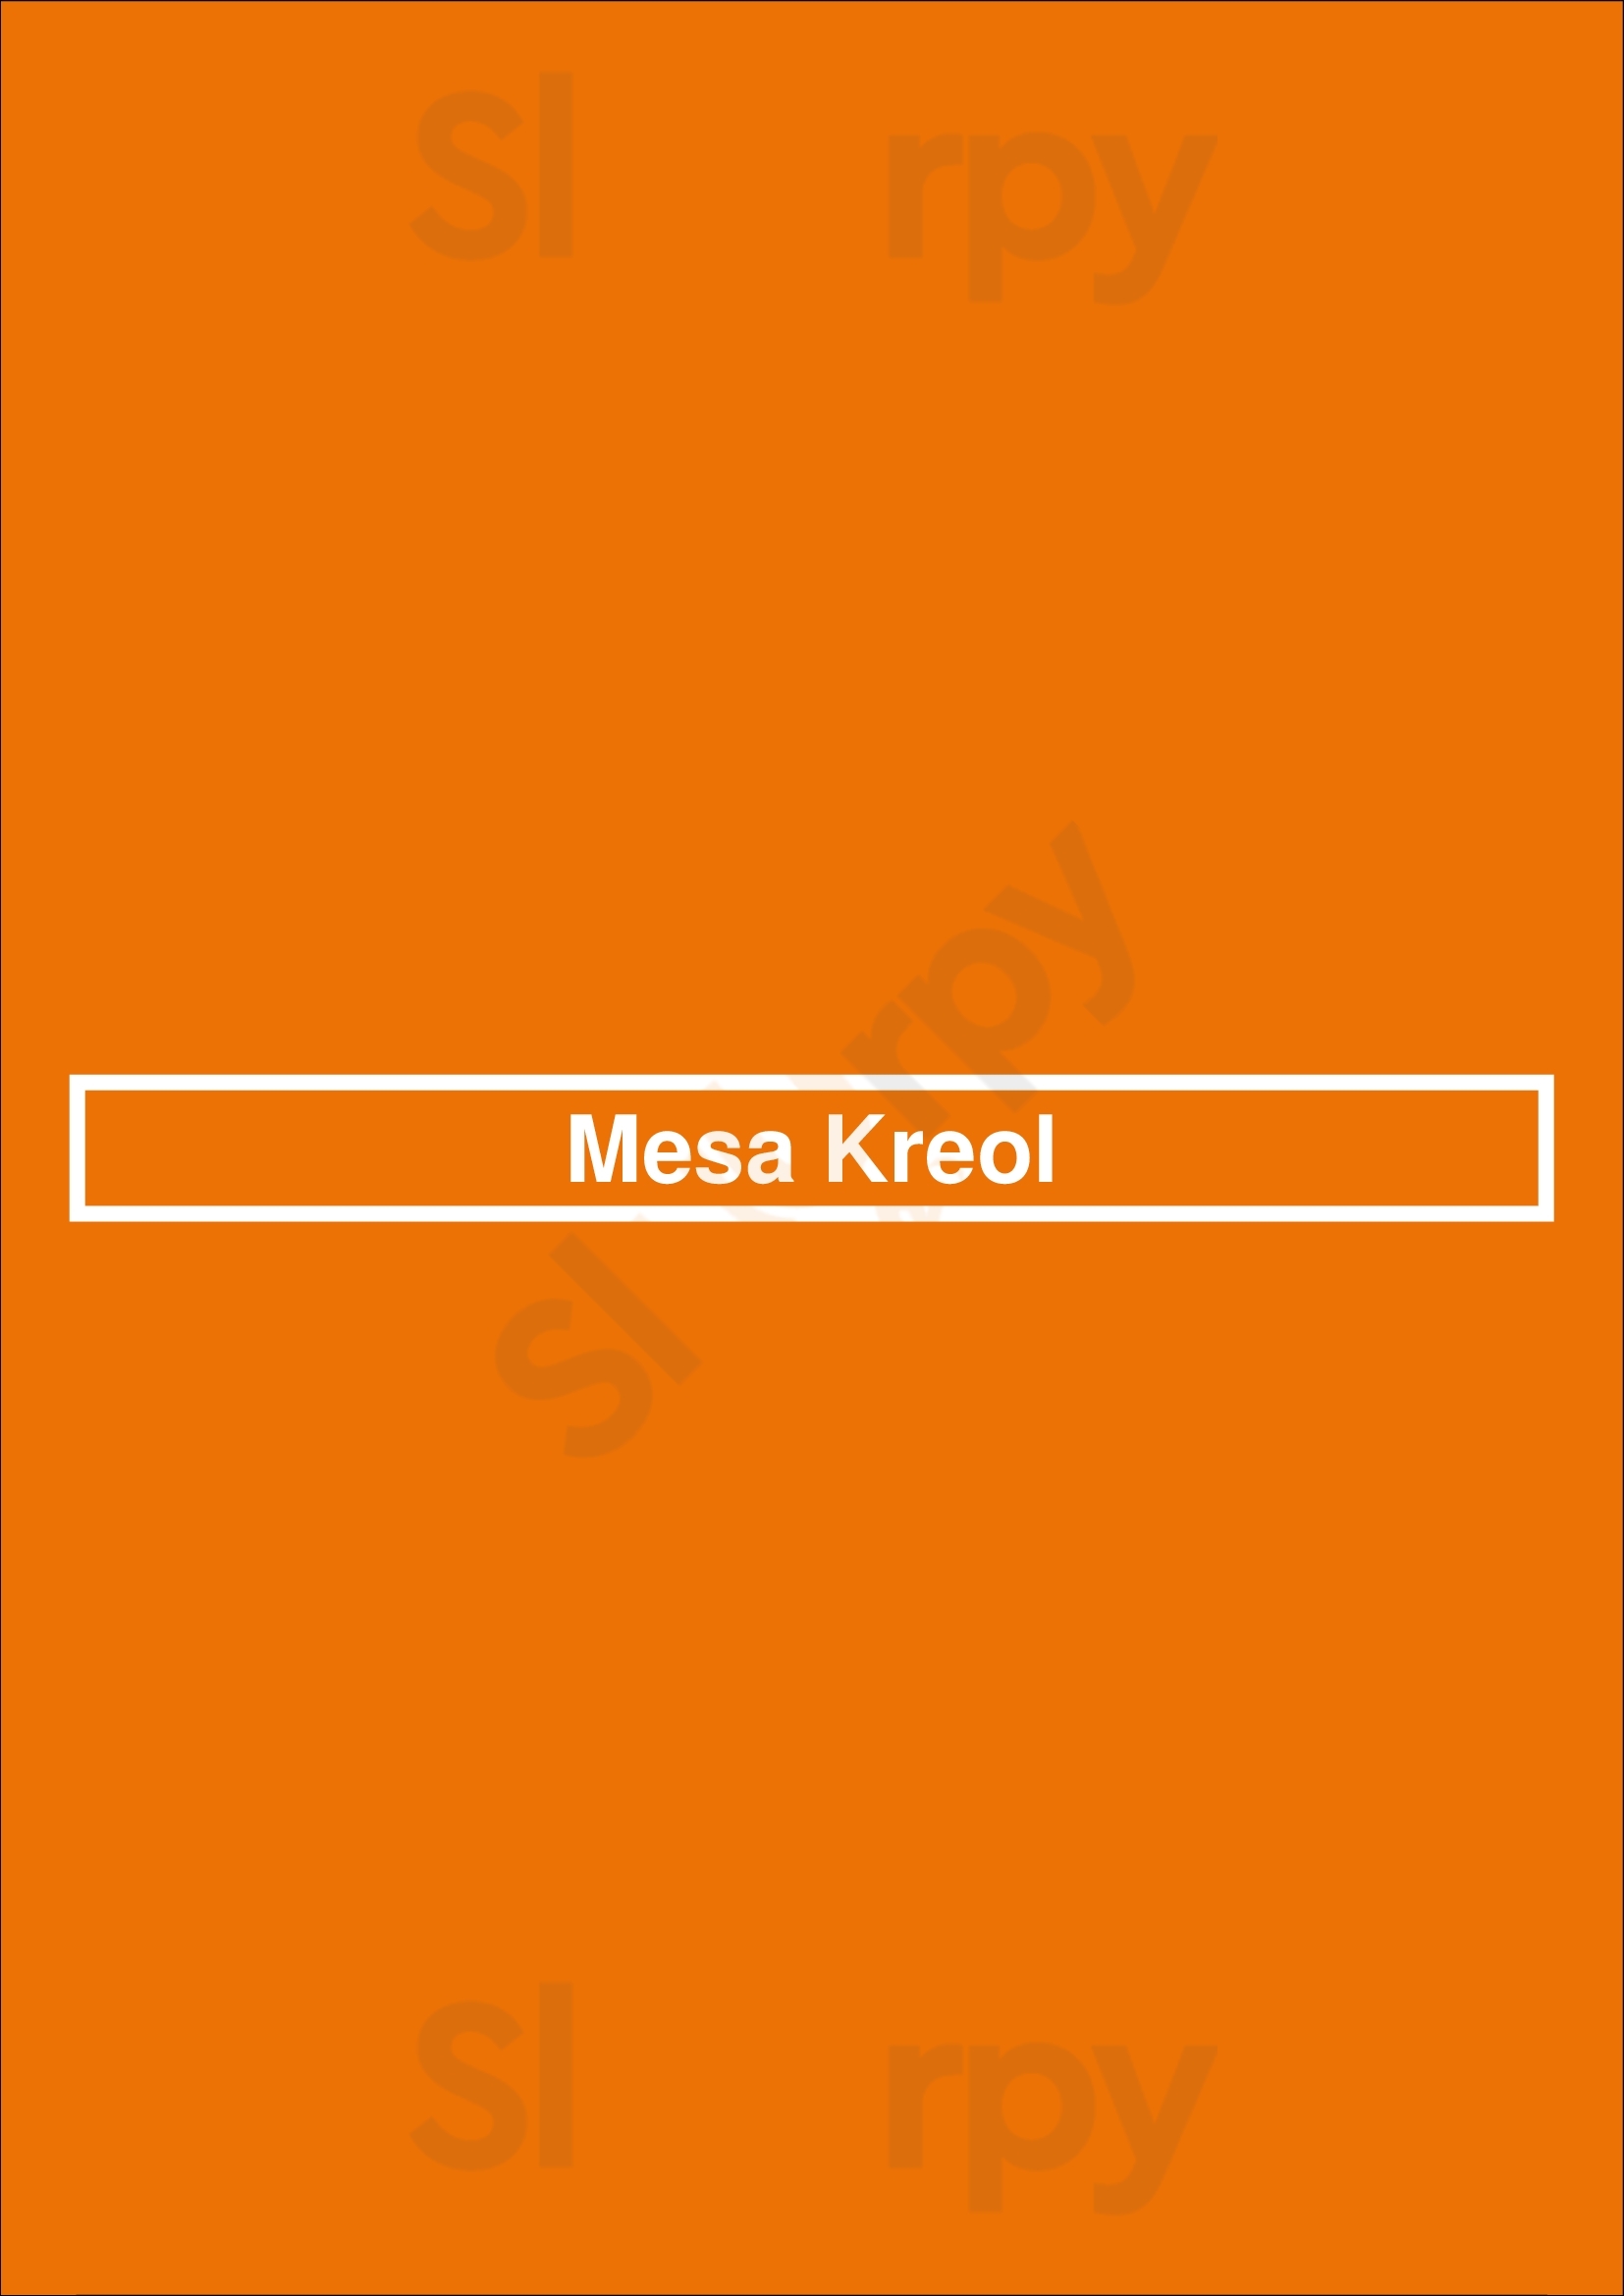 Mesa Kreol Lisboa Menu - 1